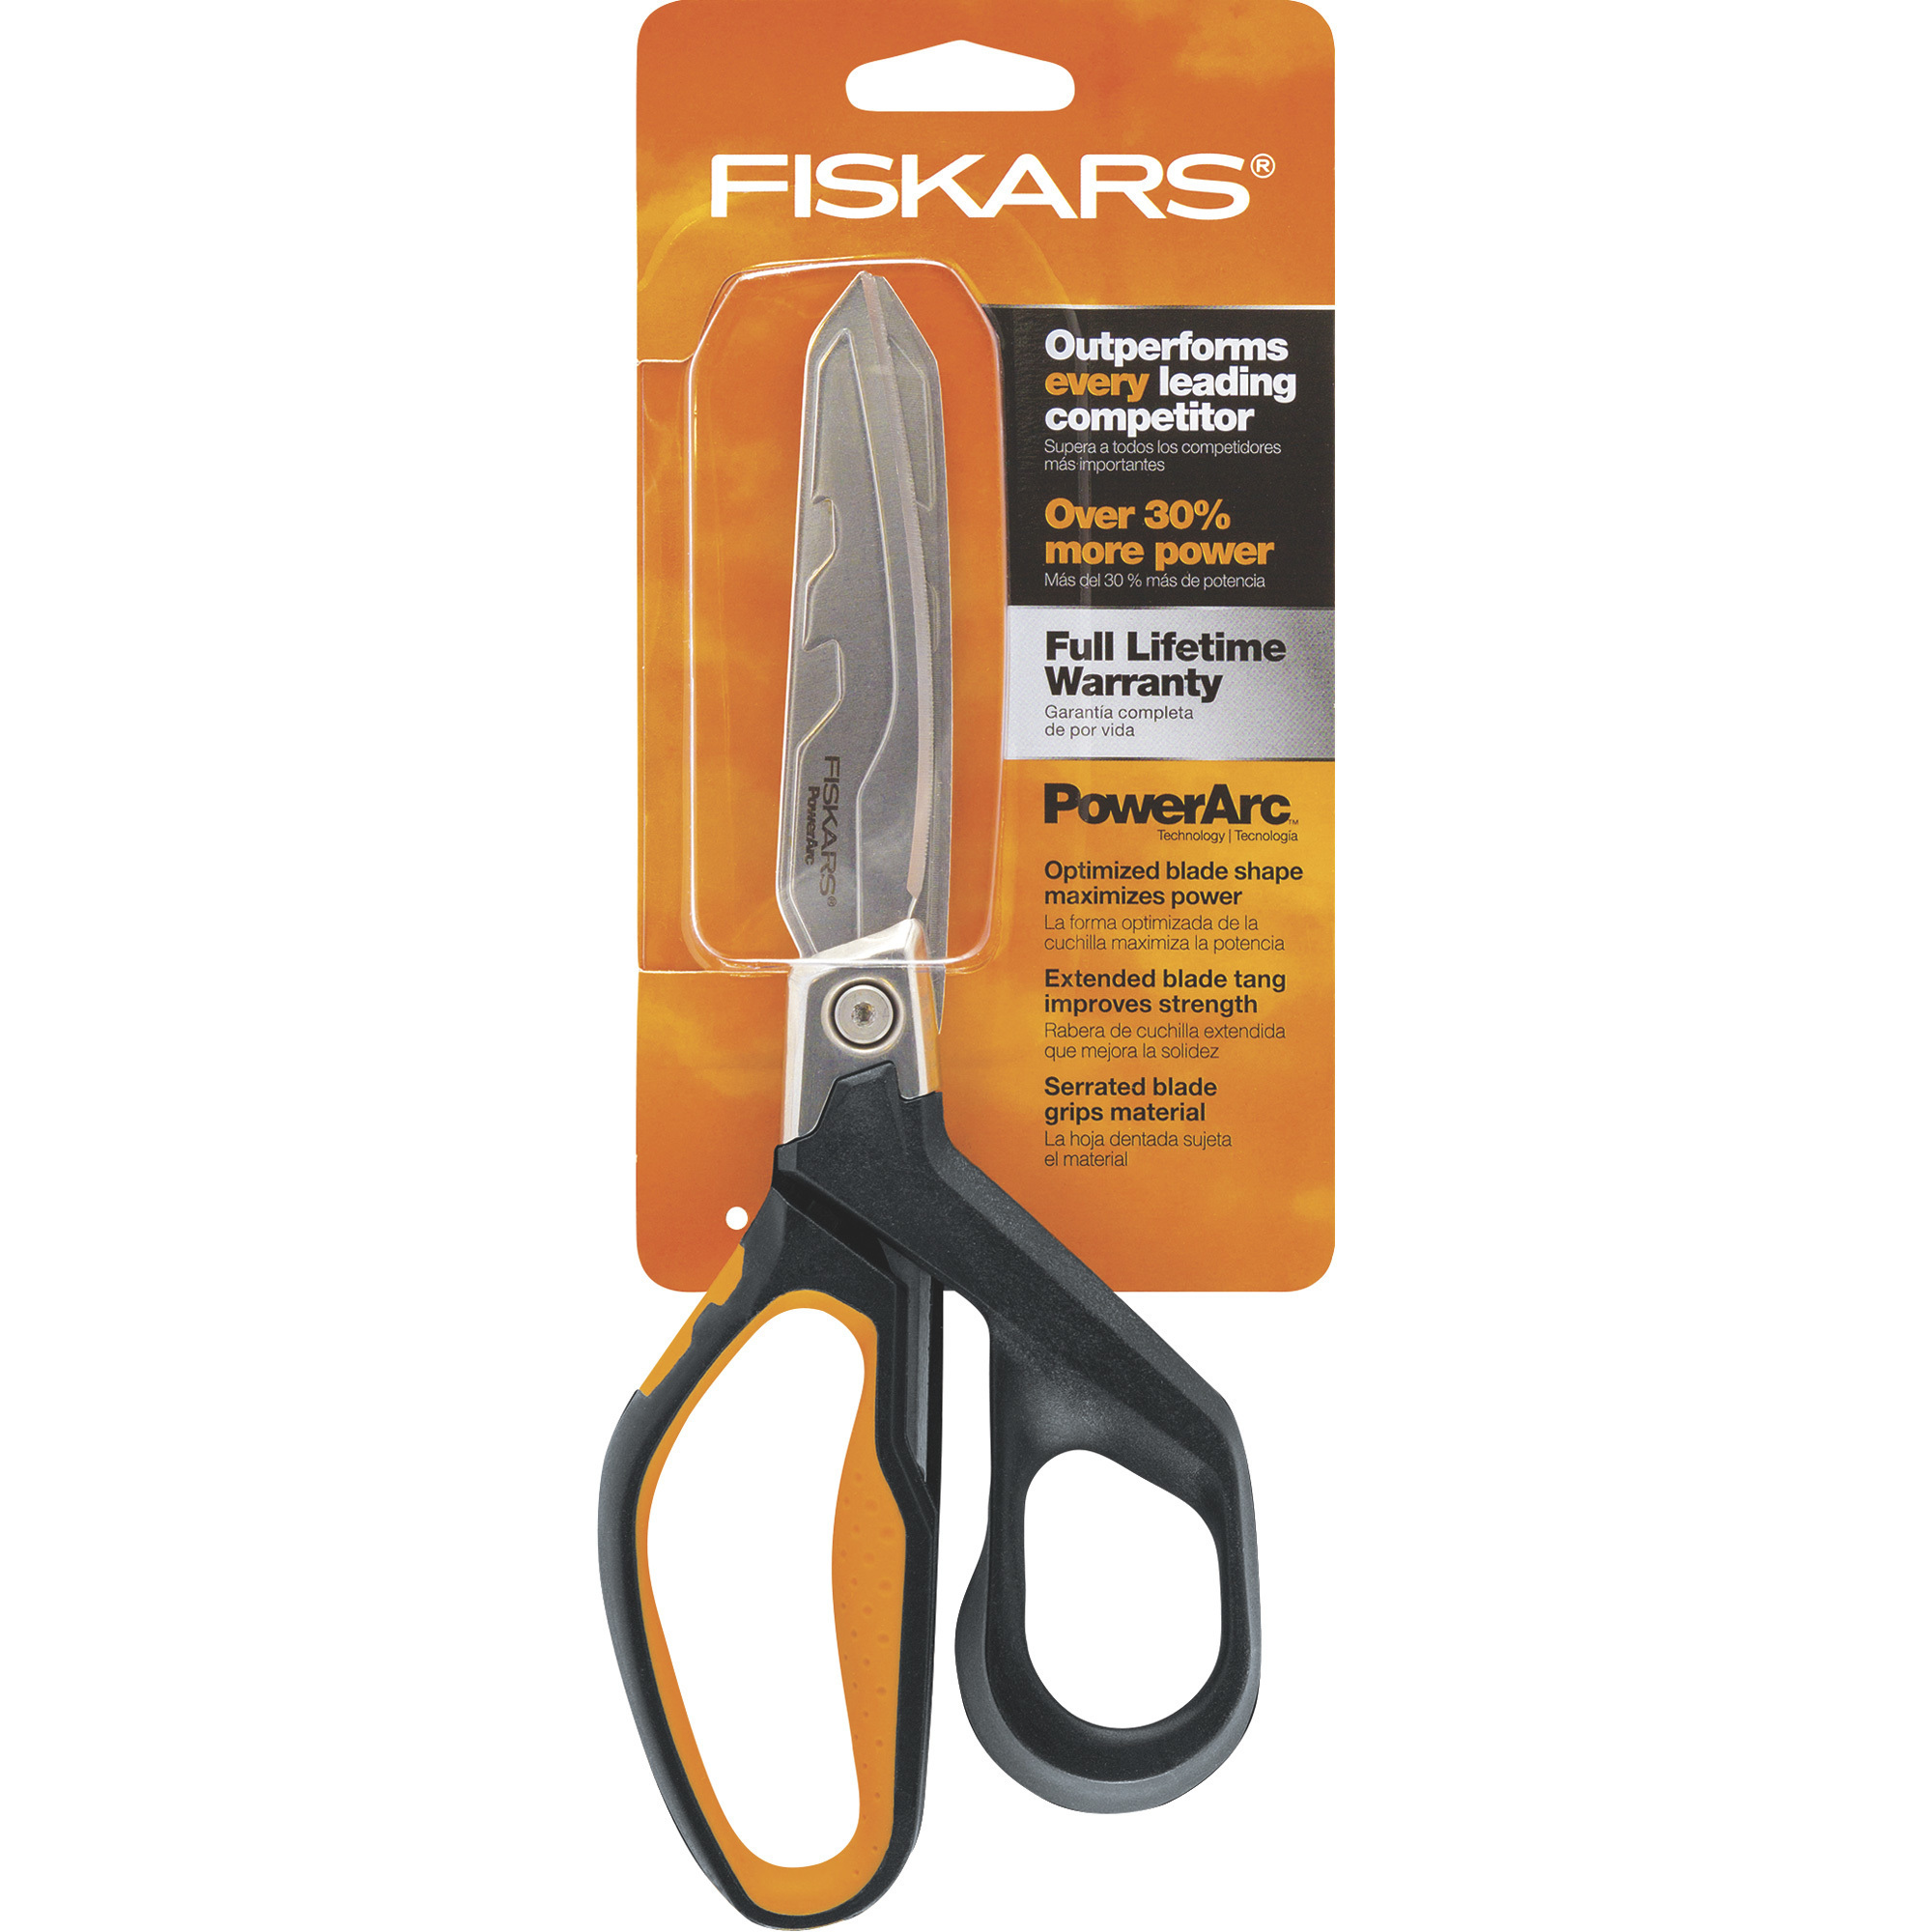 Fiskars PowerArc Serrated Shears â 8Inch Blade, Model 710140-1001